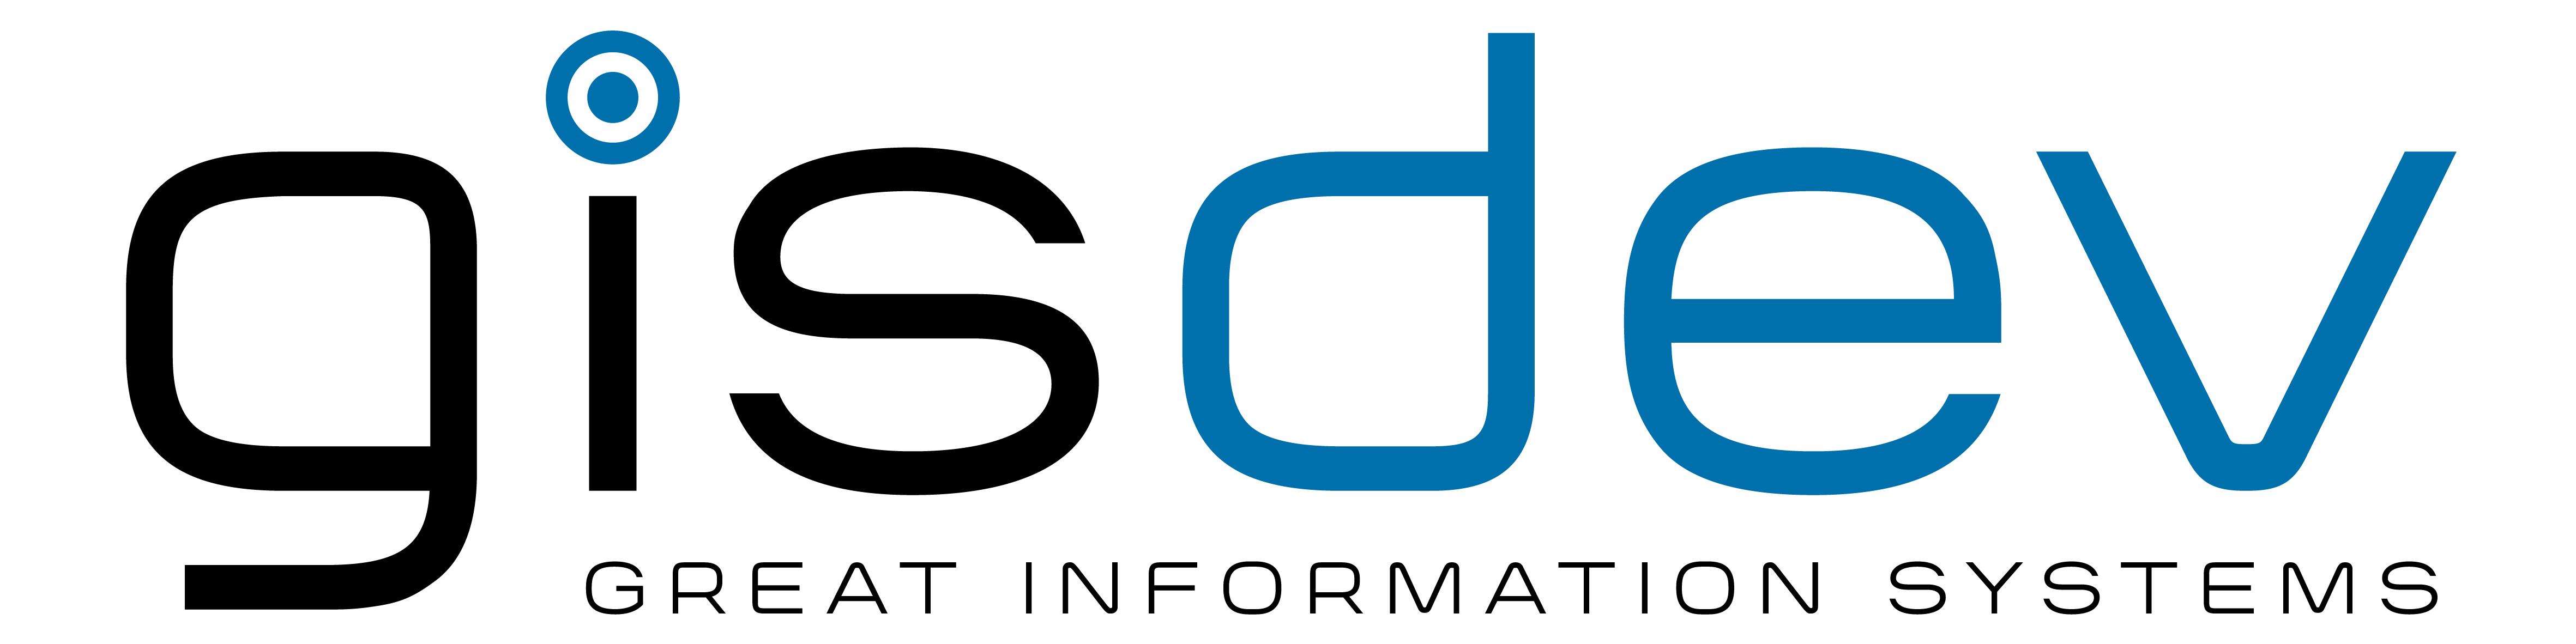 Logo of the company